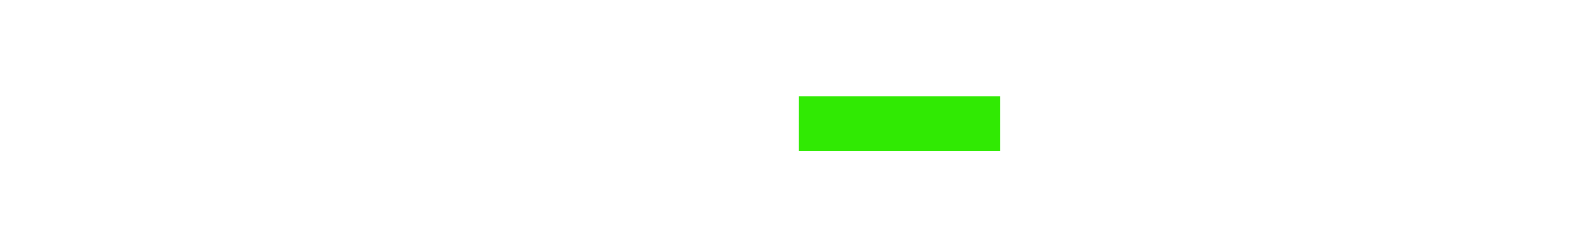 Haleon logo large for dark backgrounds (transparent PNG)